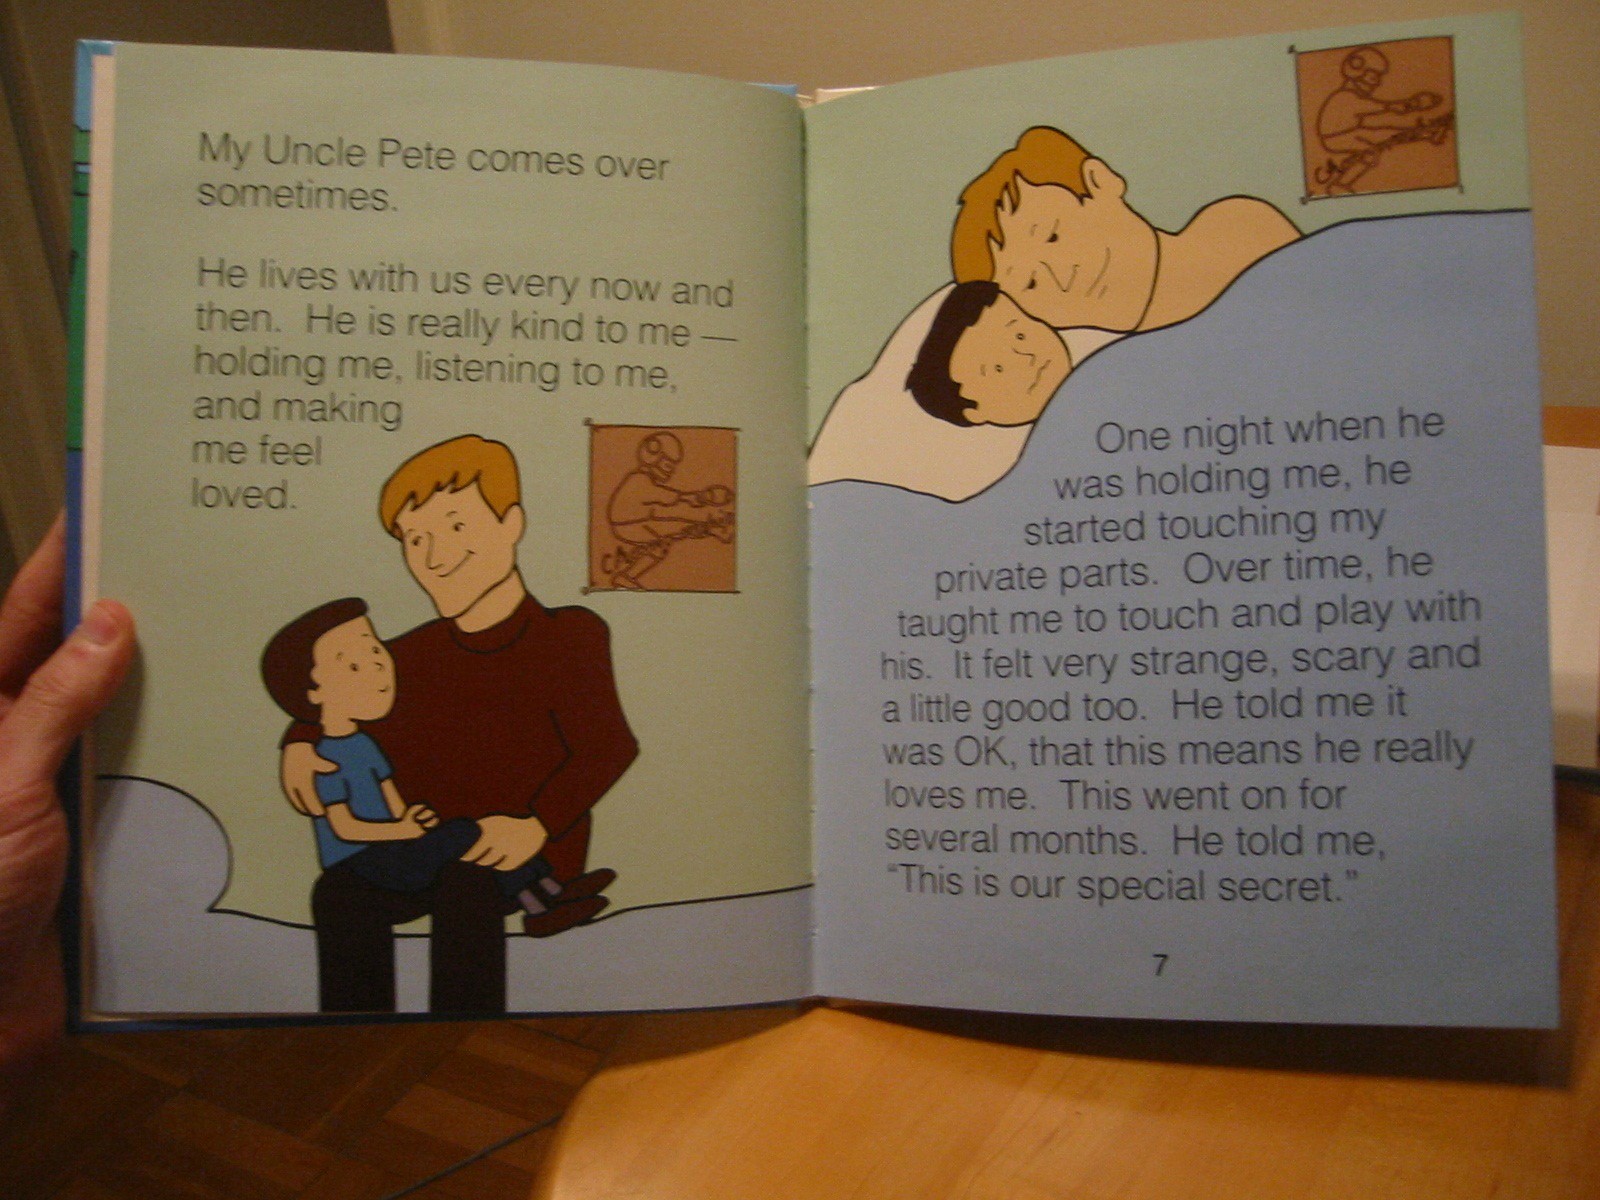 Children's books nowadays